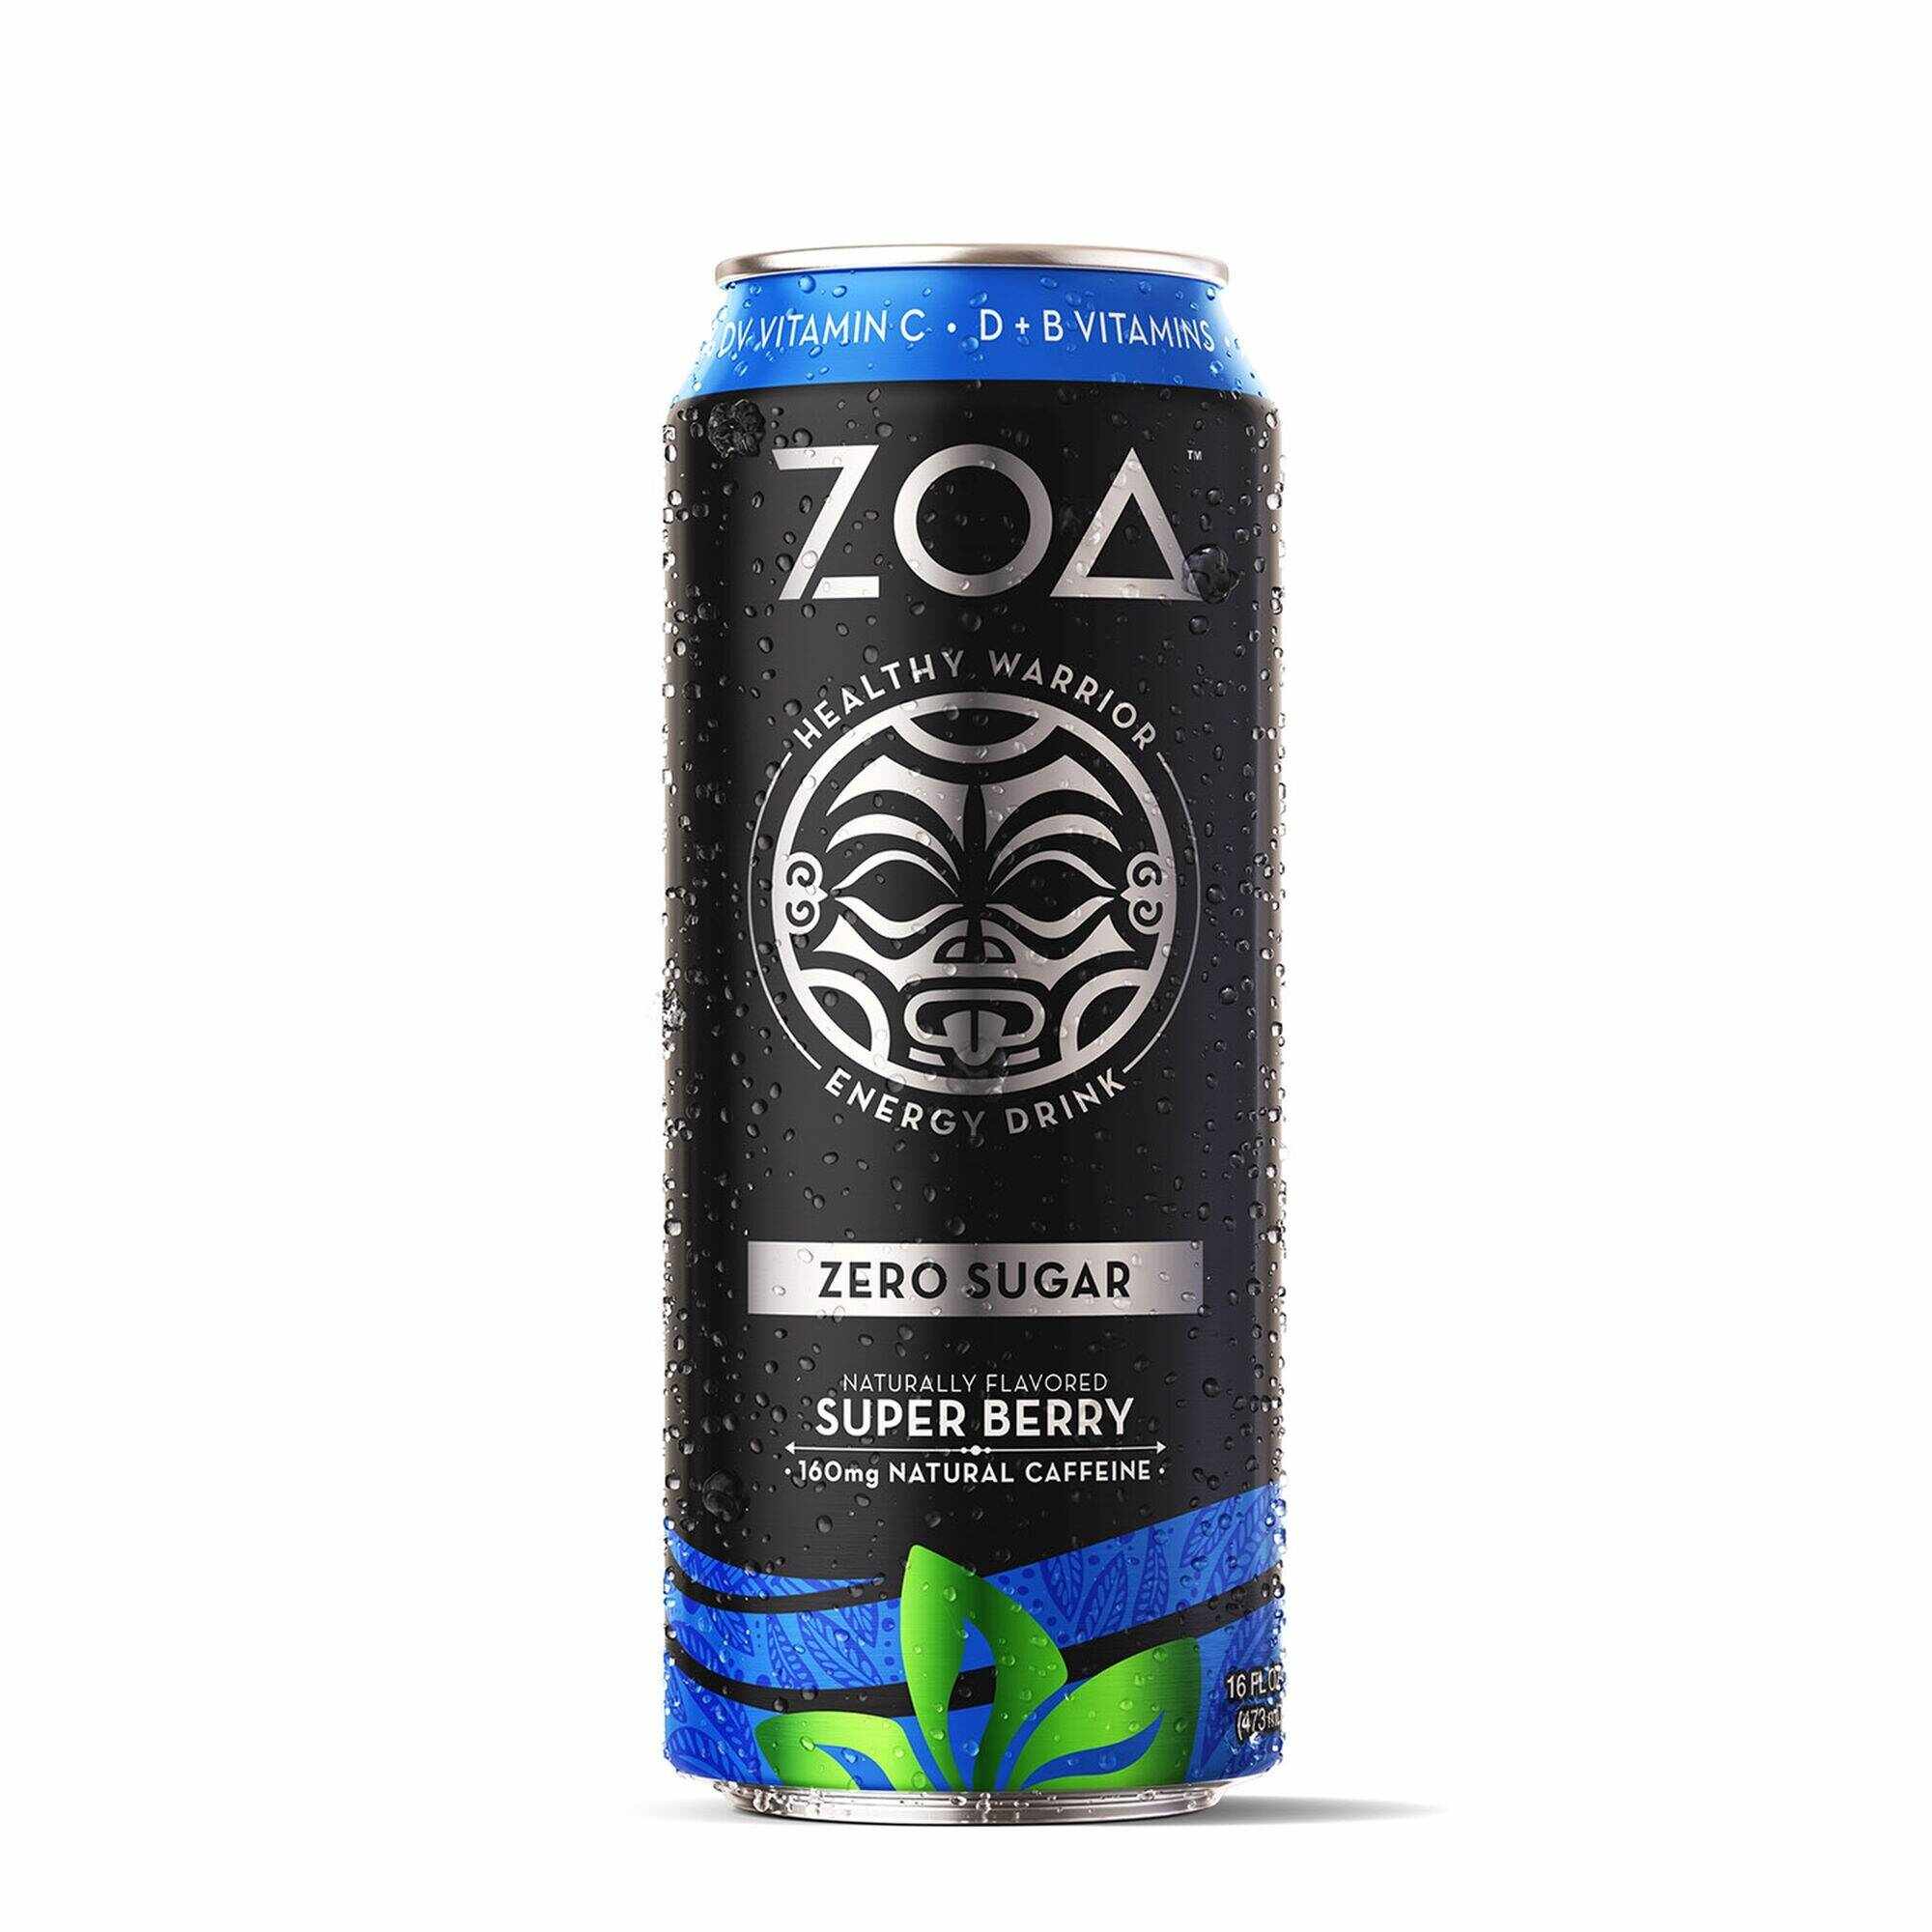 Zoa Energy Drink Zero Sugar, Bautura Energizanta zero Zahar Cu Aroma De Super Berry, 473ml - Gnc